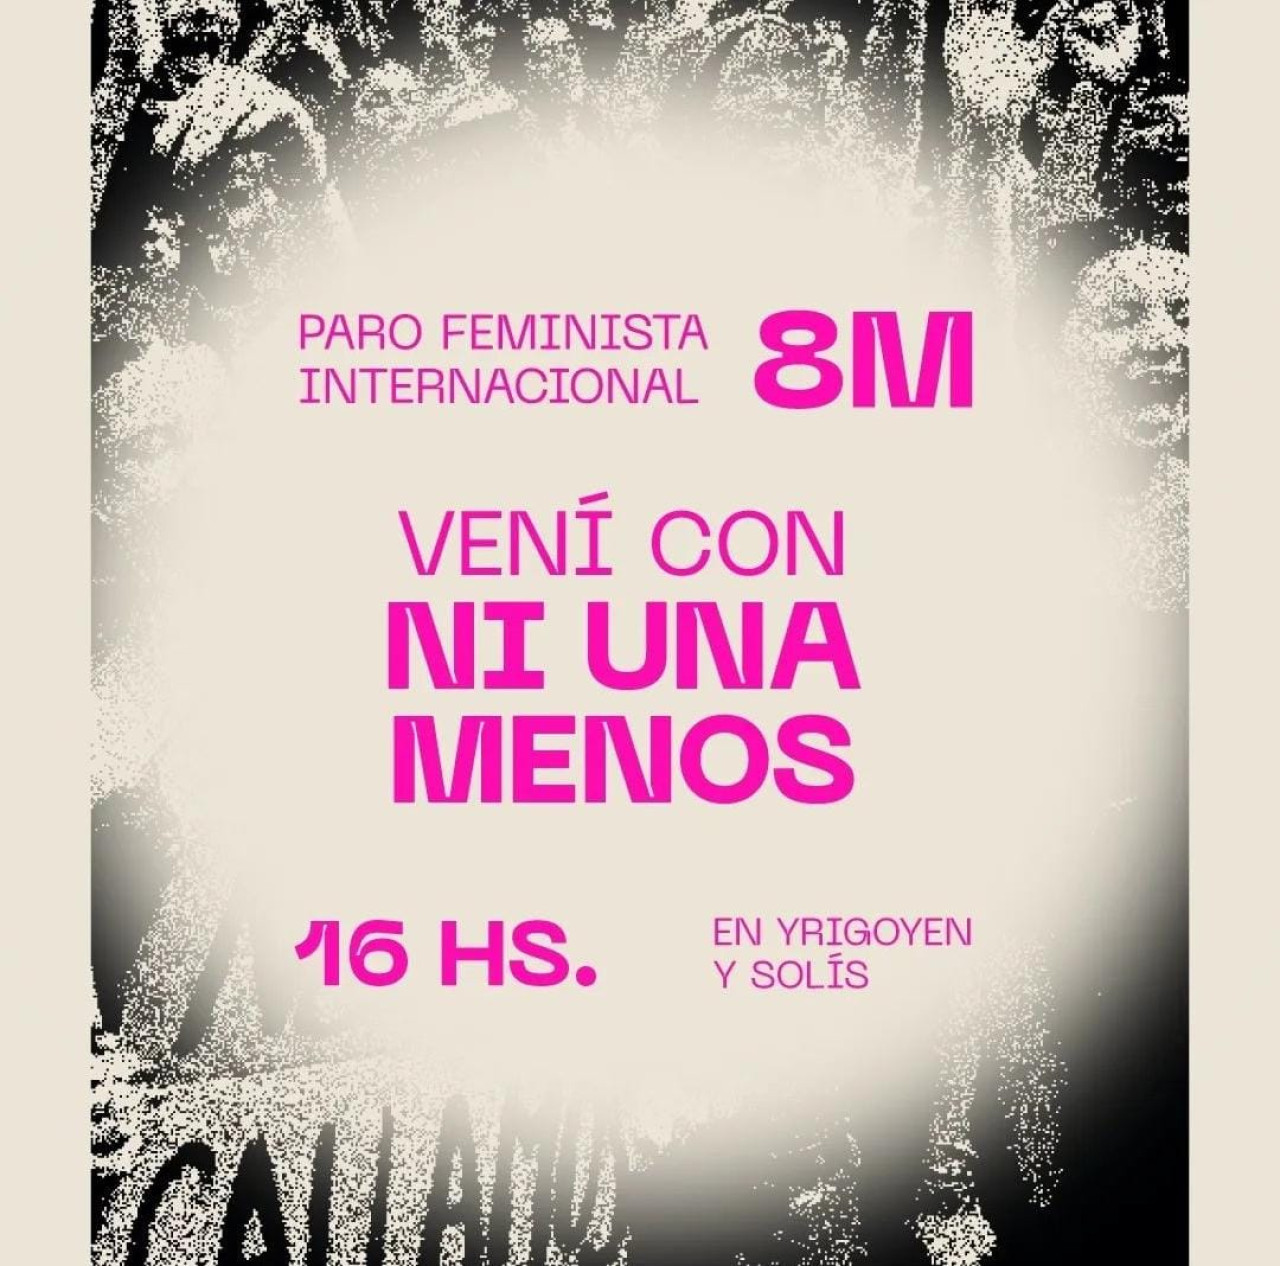 Manifestaciones por el Día de la Mujer. Foto: Instagram / niunamenos.